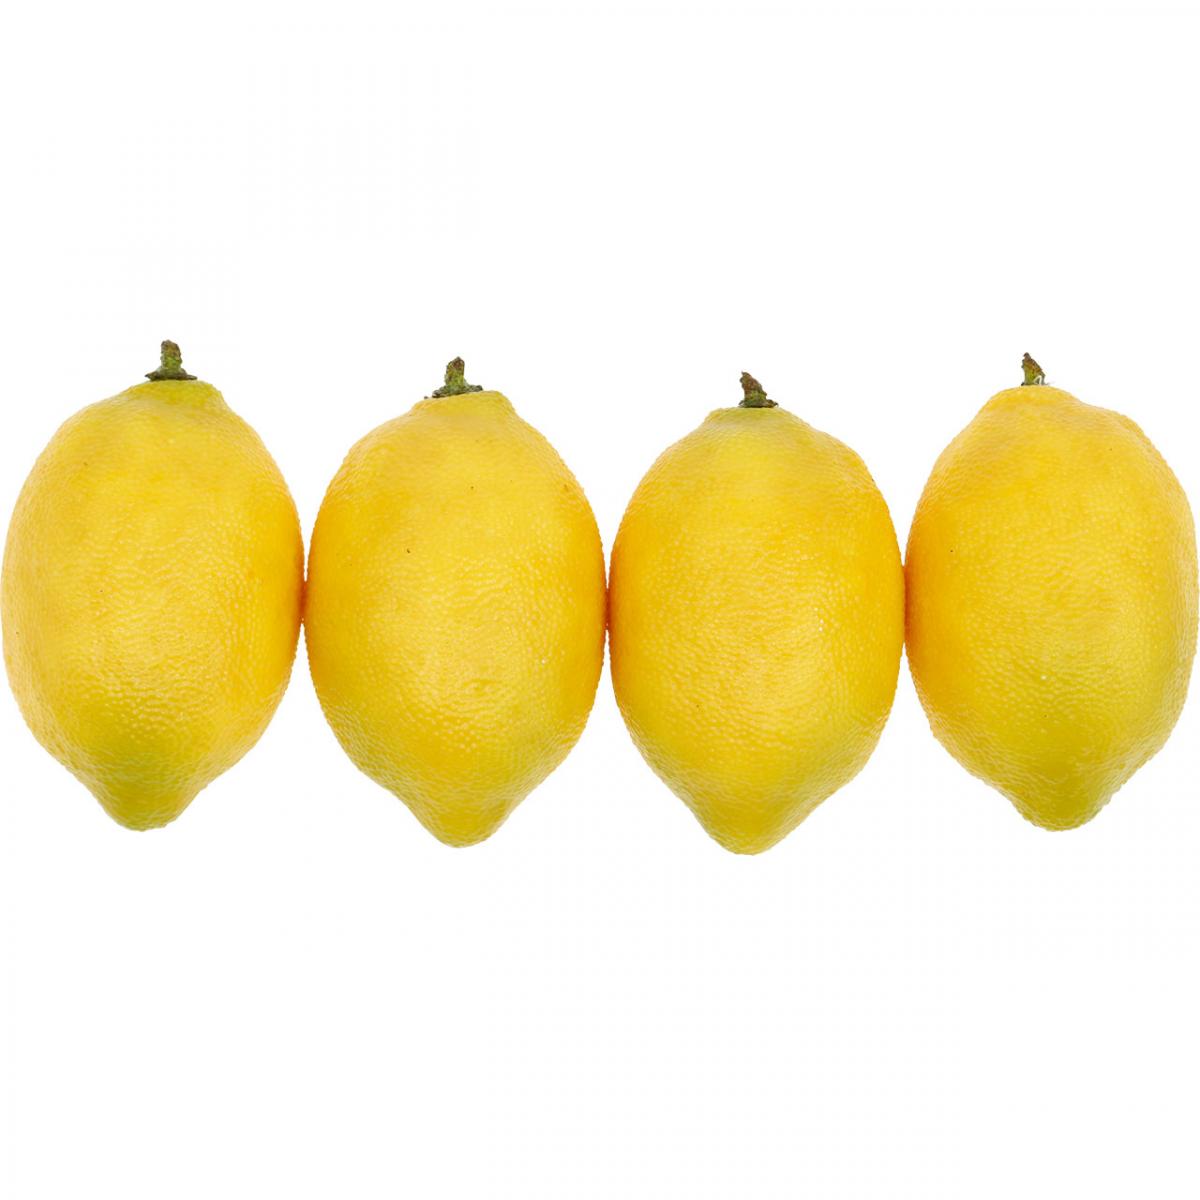 4 x Täuschend echt Zitronen Deko Obst Attrappen Dekoration Kunstobst Dekofrüchte 